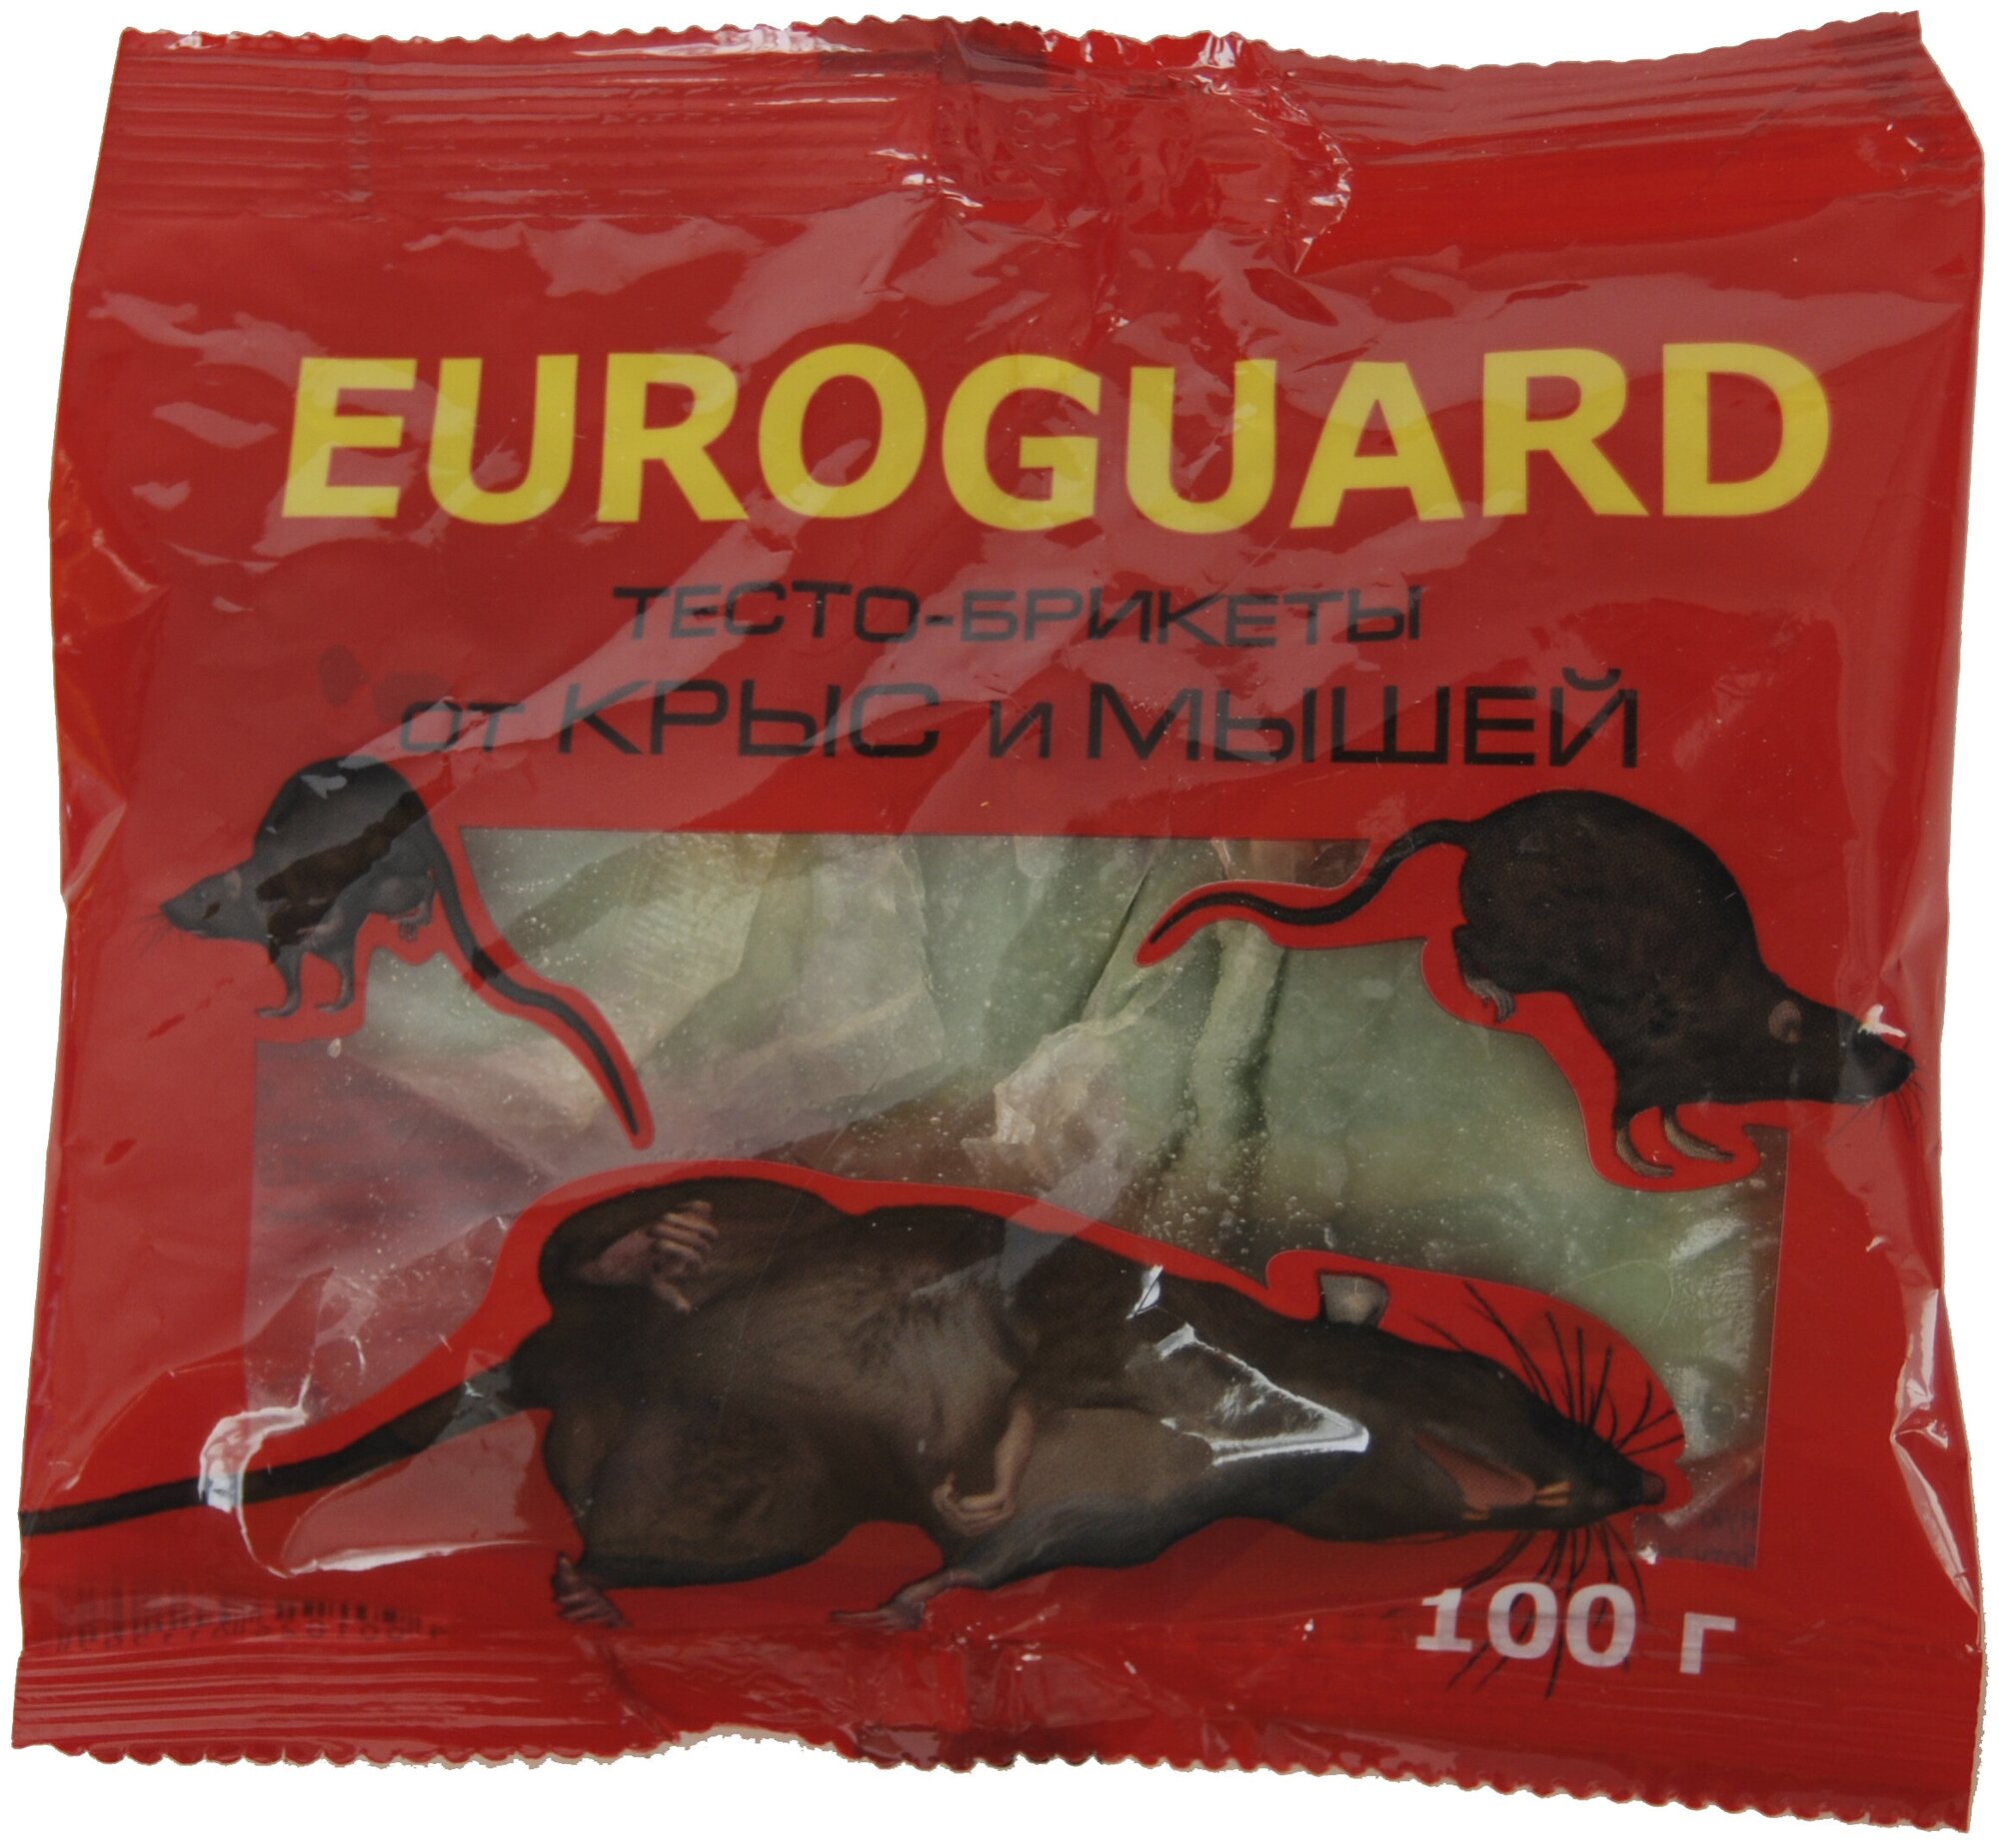 Euroguard Тесто-брикеты от крыс и мышей, 100гр